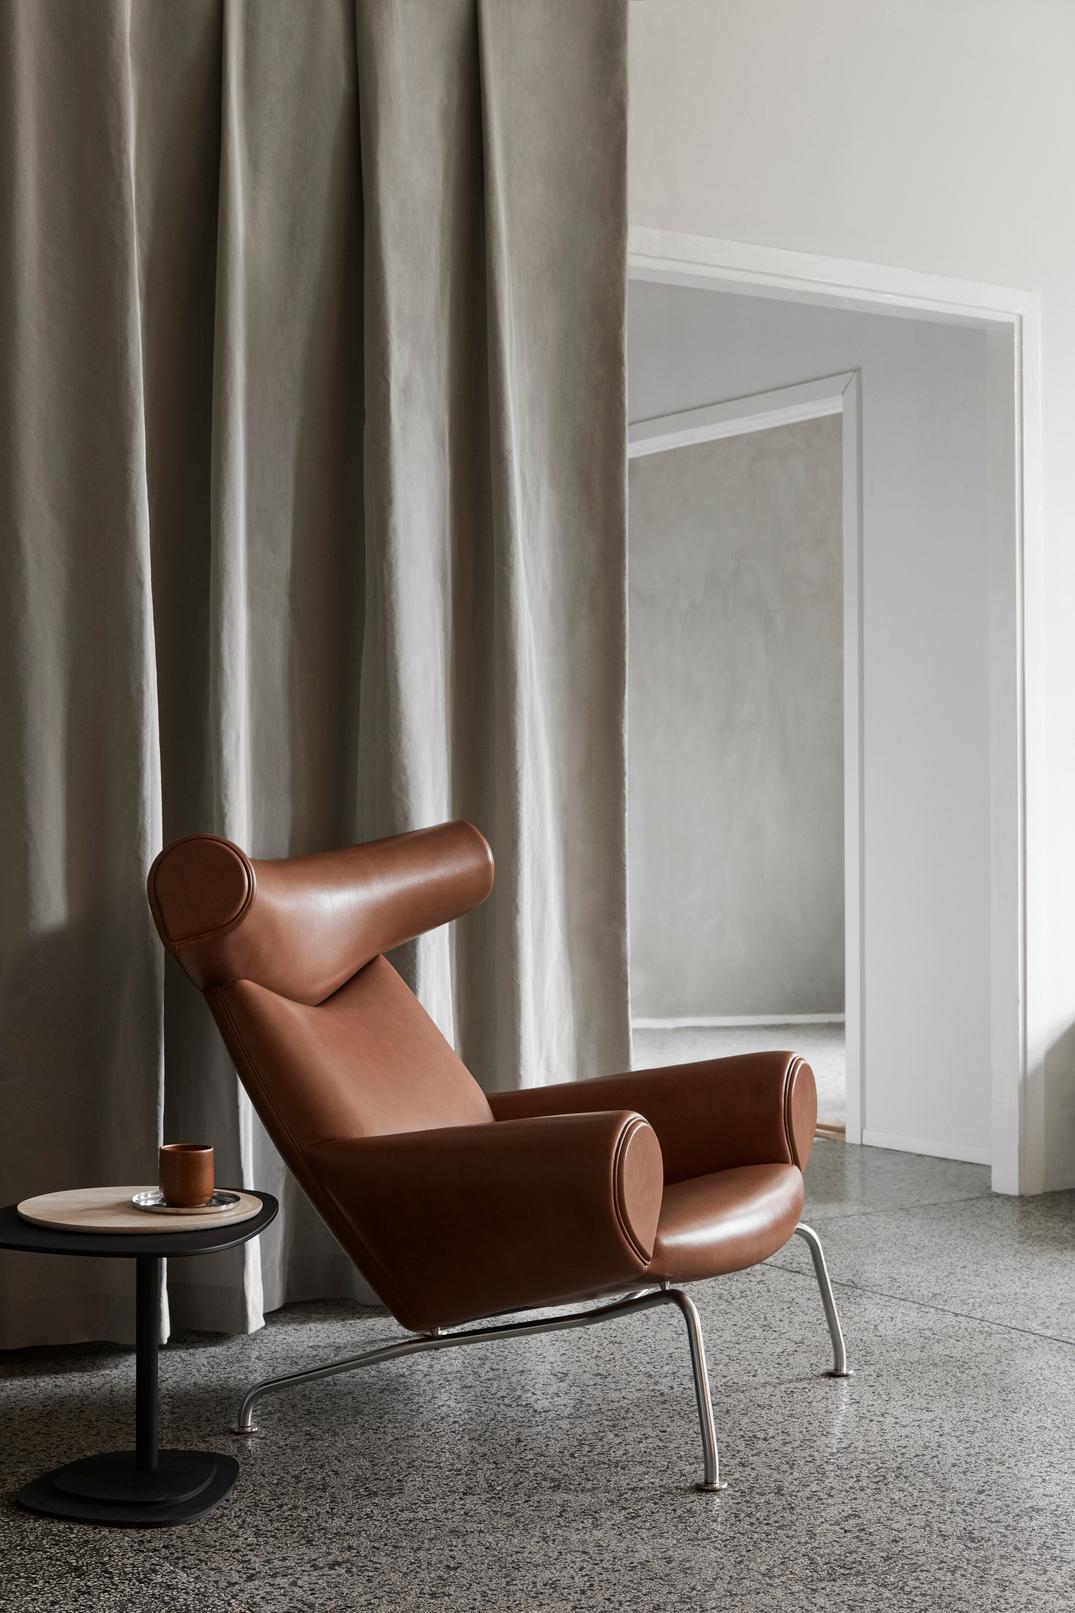 Der von Hans J. Wegner entworfene Ox Chair ist ein ikonisches Möbelstück mit unbestreitbarer Präsenz. Ein kühner, skulpturaler Stuhl, der mit seiner markanten, an Ochsenhörner erinnernden Kopfstütze und seinem voluminösen Körper die zurückhaltende